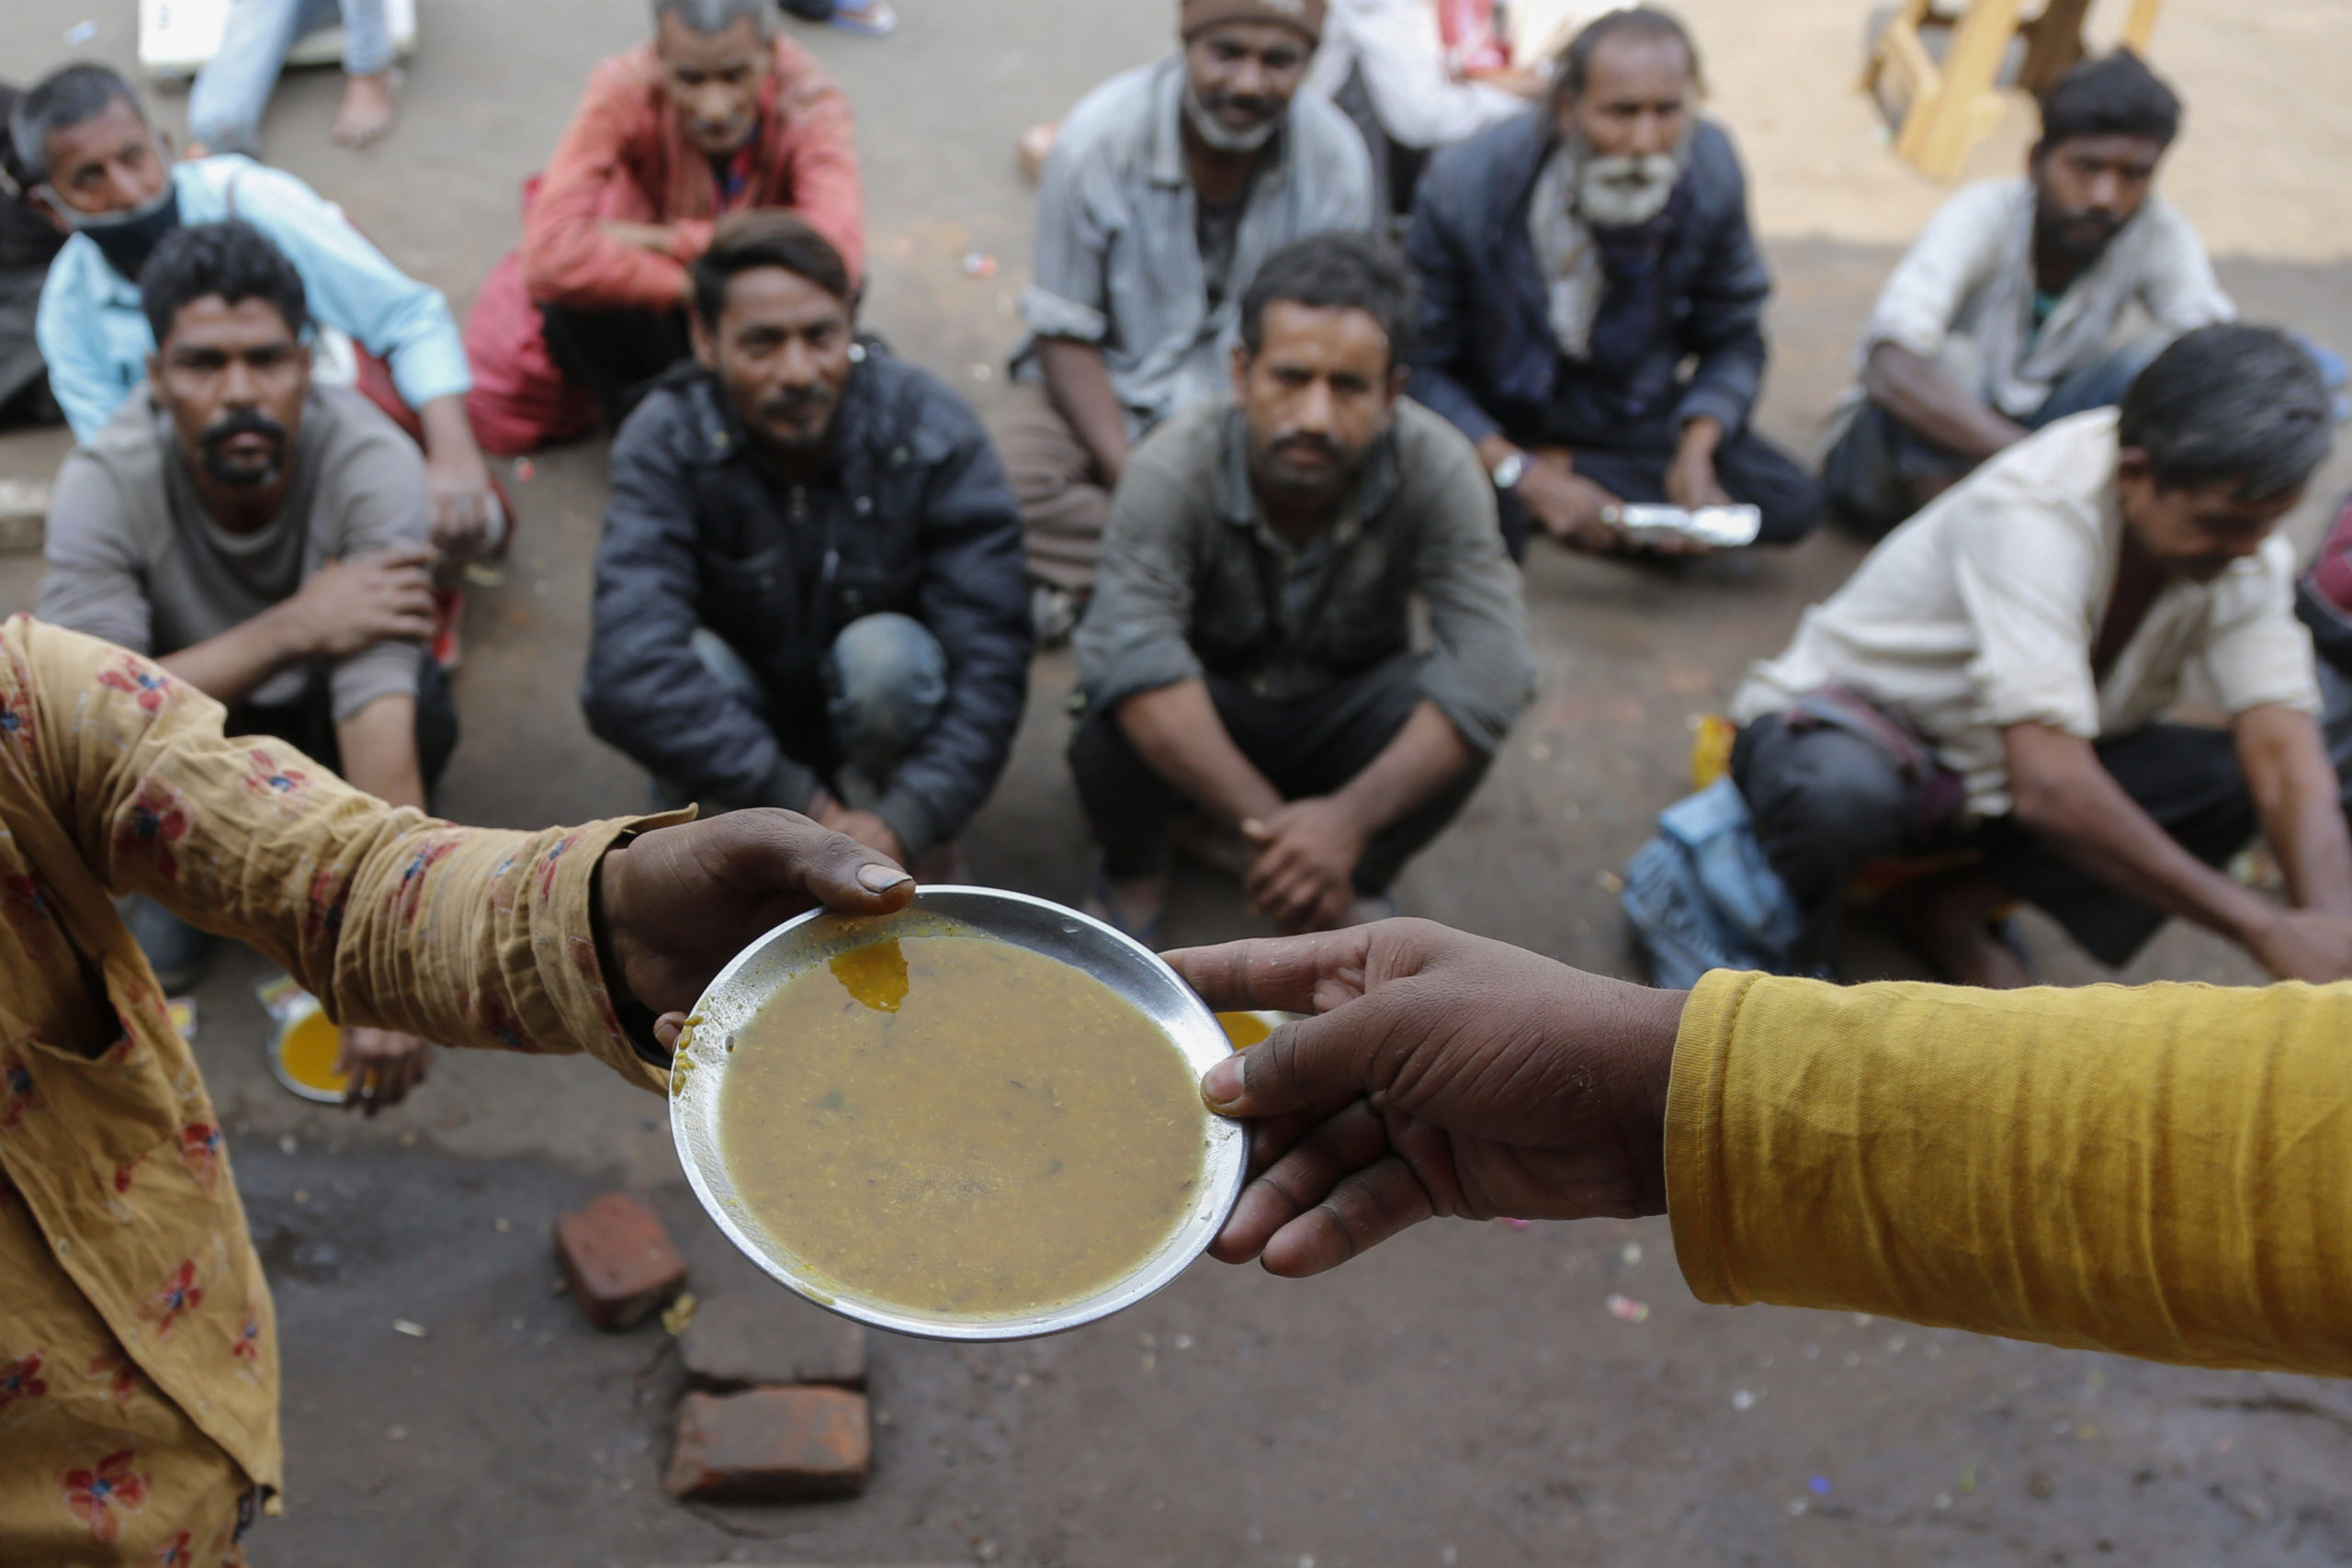 Η πείνα συνεχίζει να αυξάνεται σε πολλά μέρη του κόσμου – Απομακρύνεται ο στόχος για την καταπολέμησή της